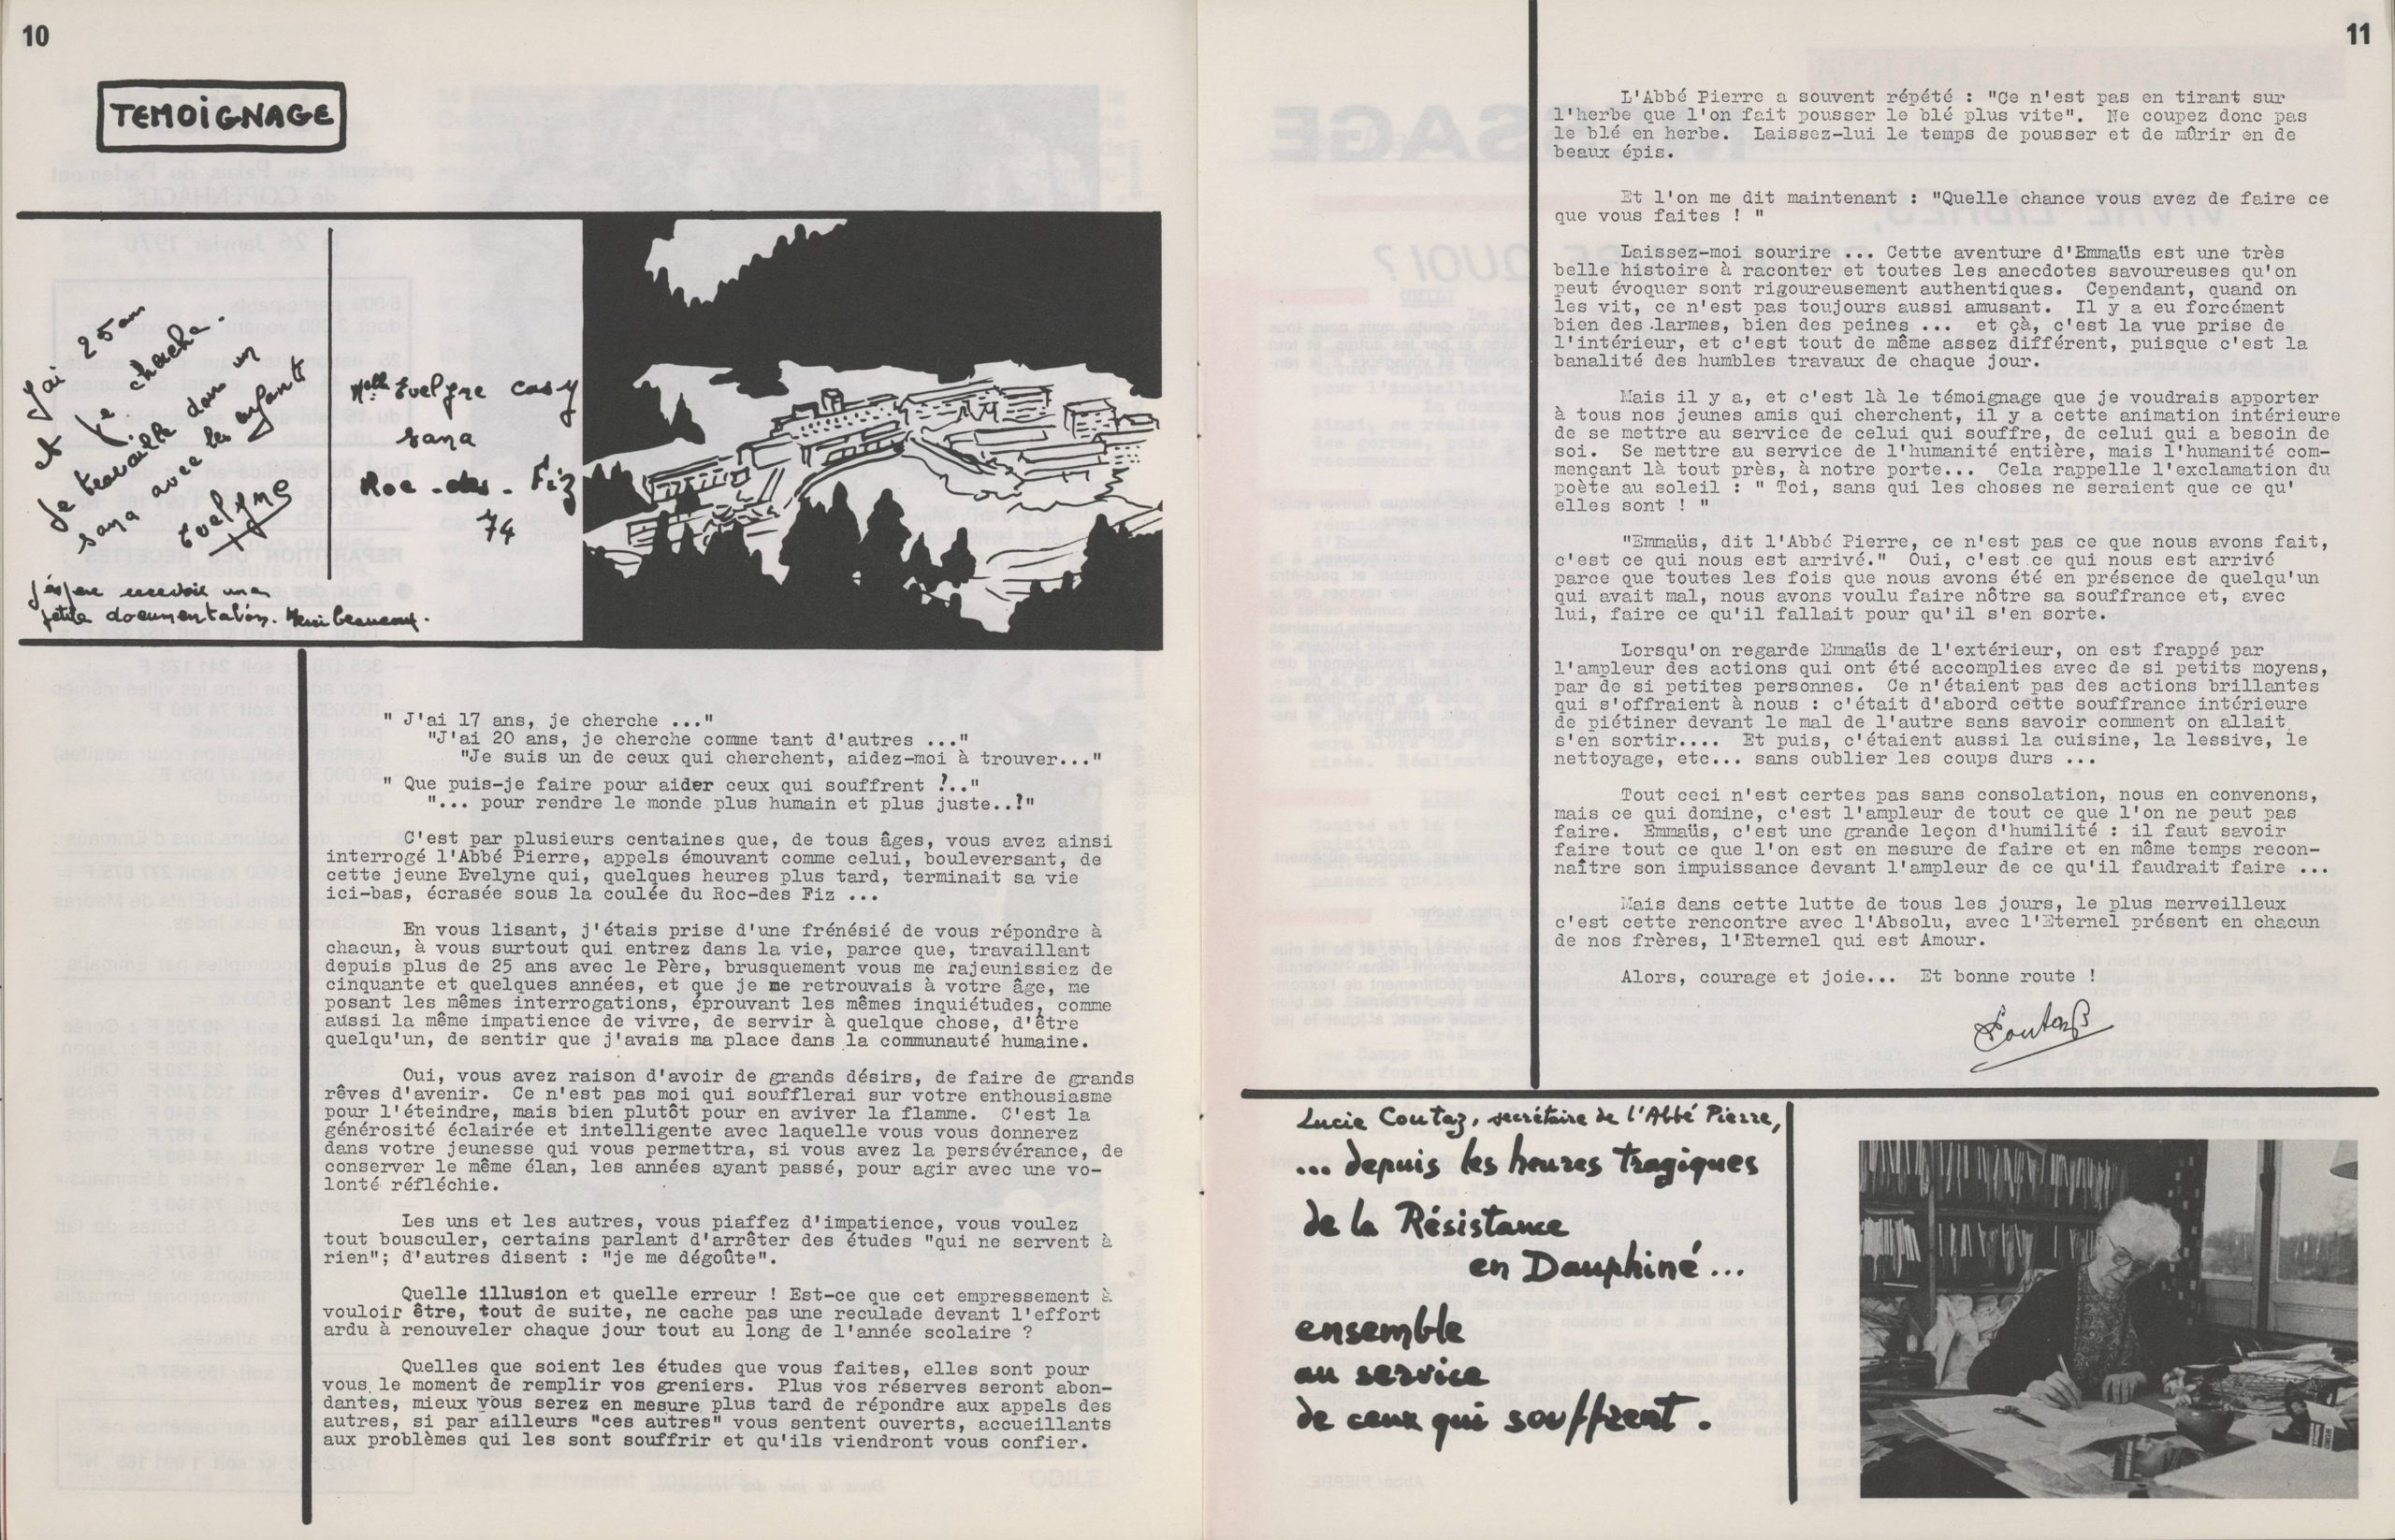 Testimonio de Lucie Coutaz sobre la juventud - Revista Faims & Soifs des hommes, abril-mayo 1970